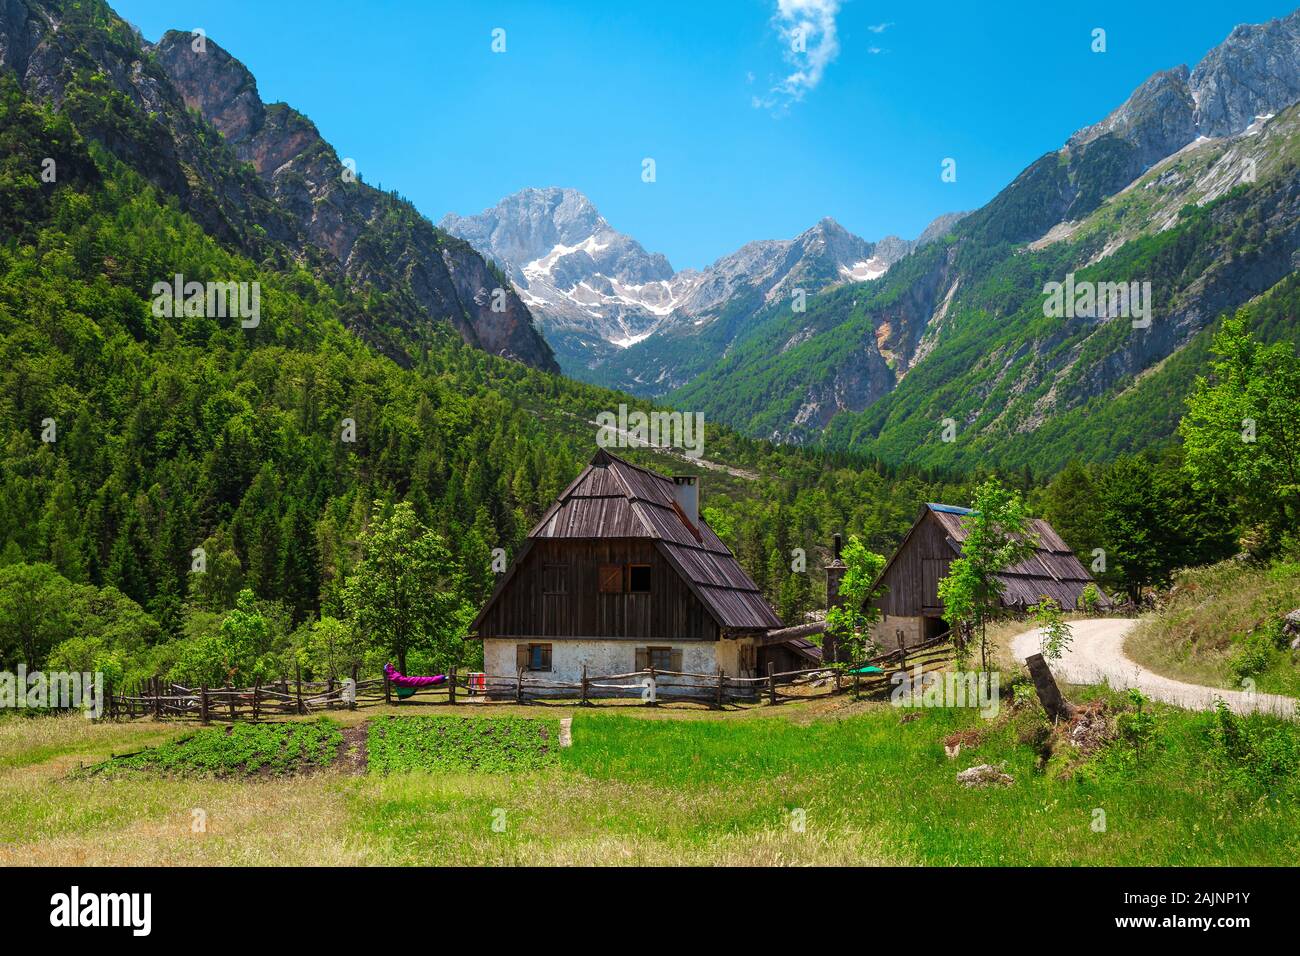 L'été pittoresque paysage alpin avec des maisons de campagne et de hautes montagnes enneigées en arrière-plan, la vallée de la soca, Slovénie, Europe Banque D'Images